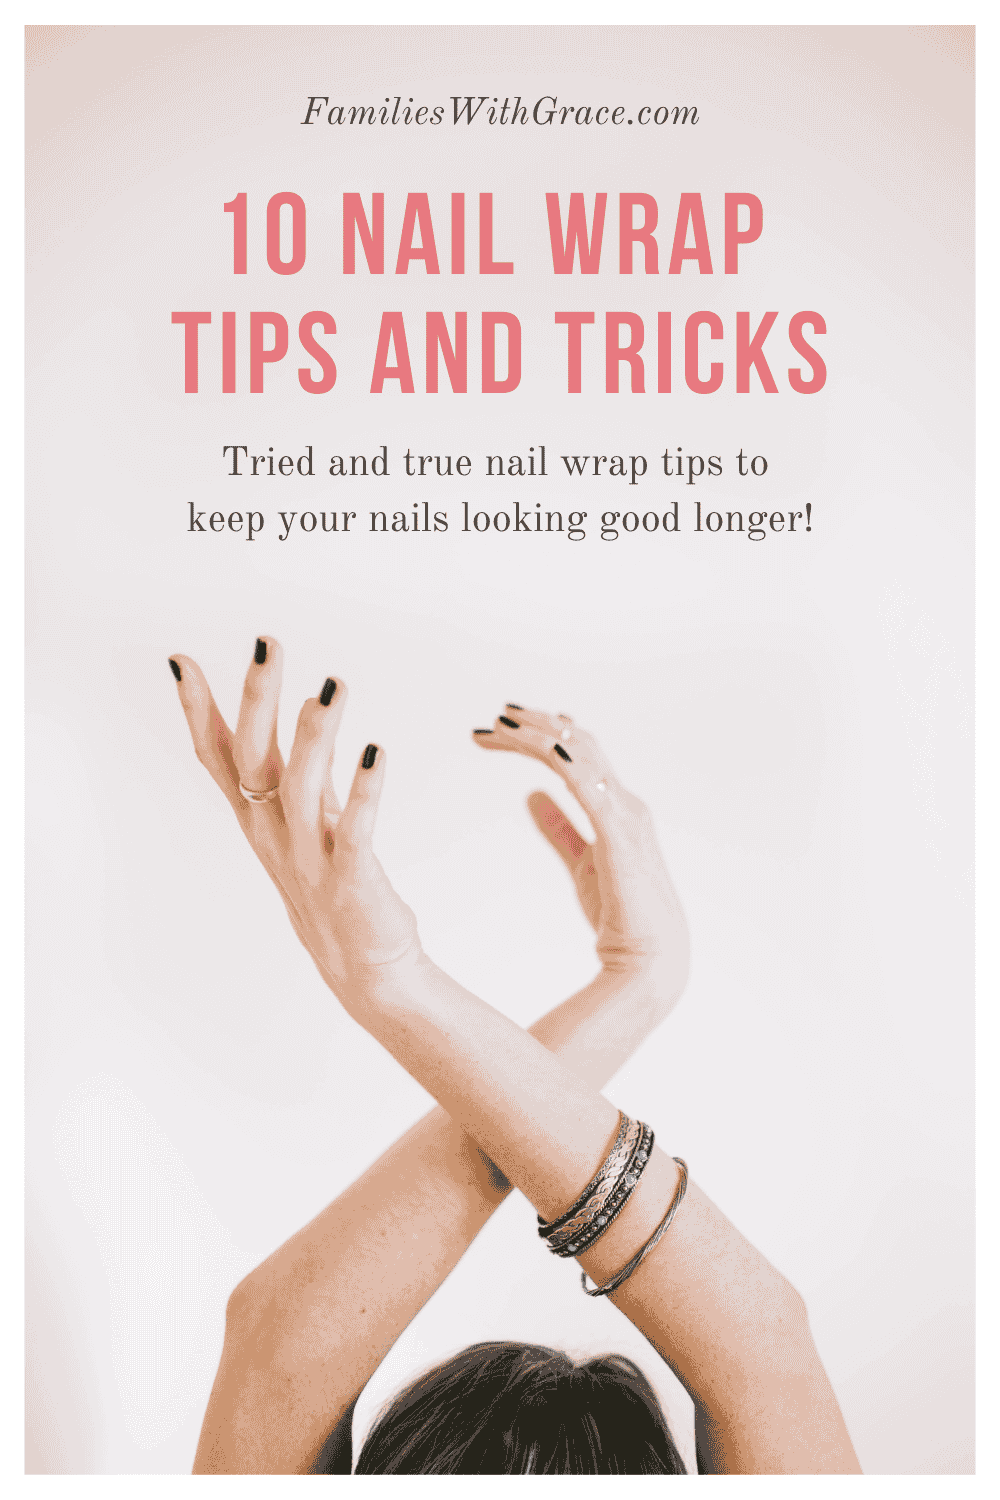 10 Nail wrap tips and tricks